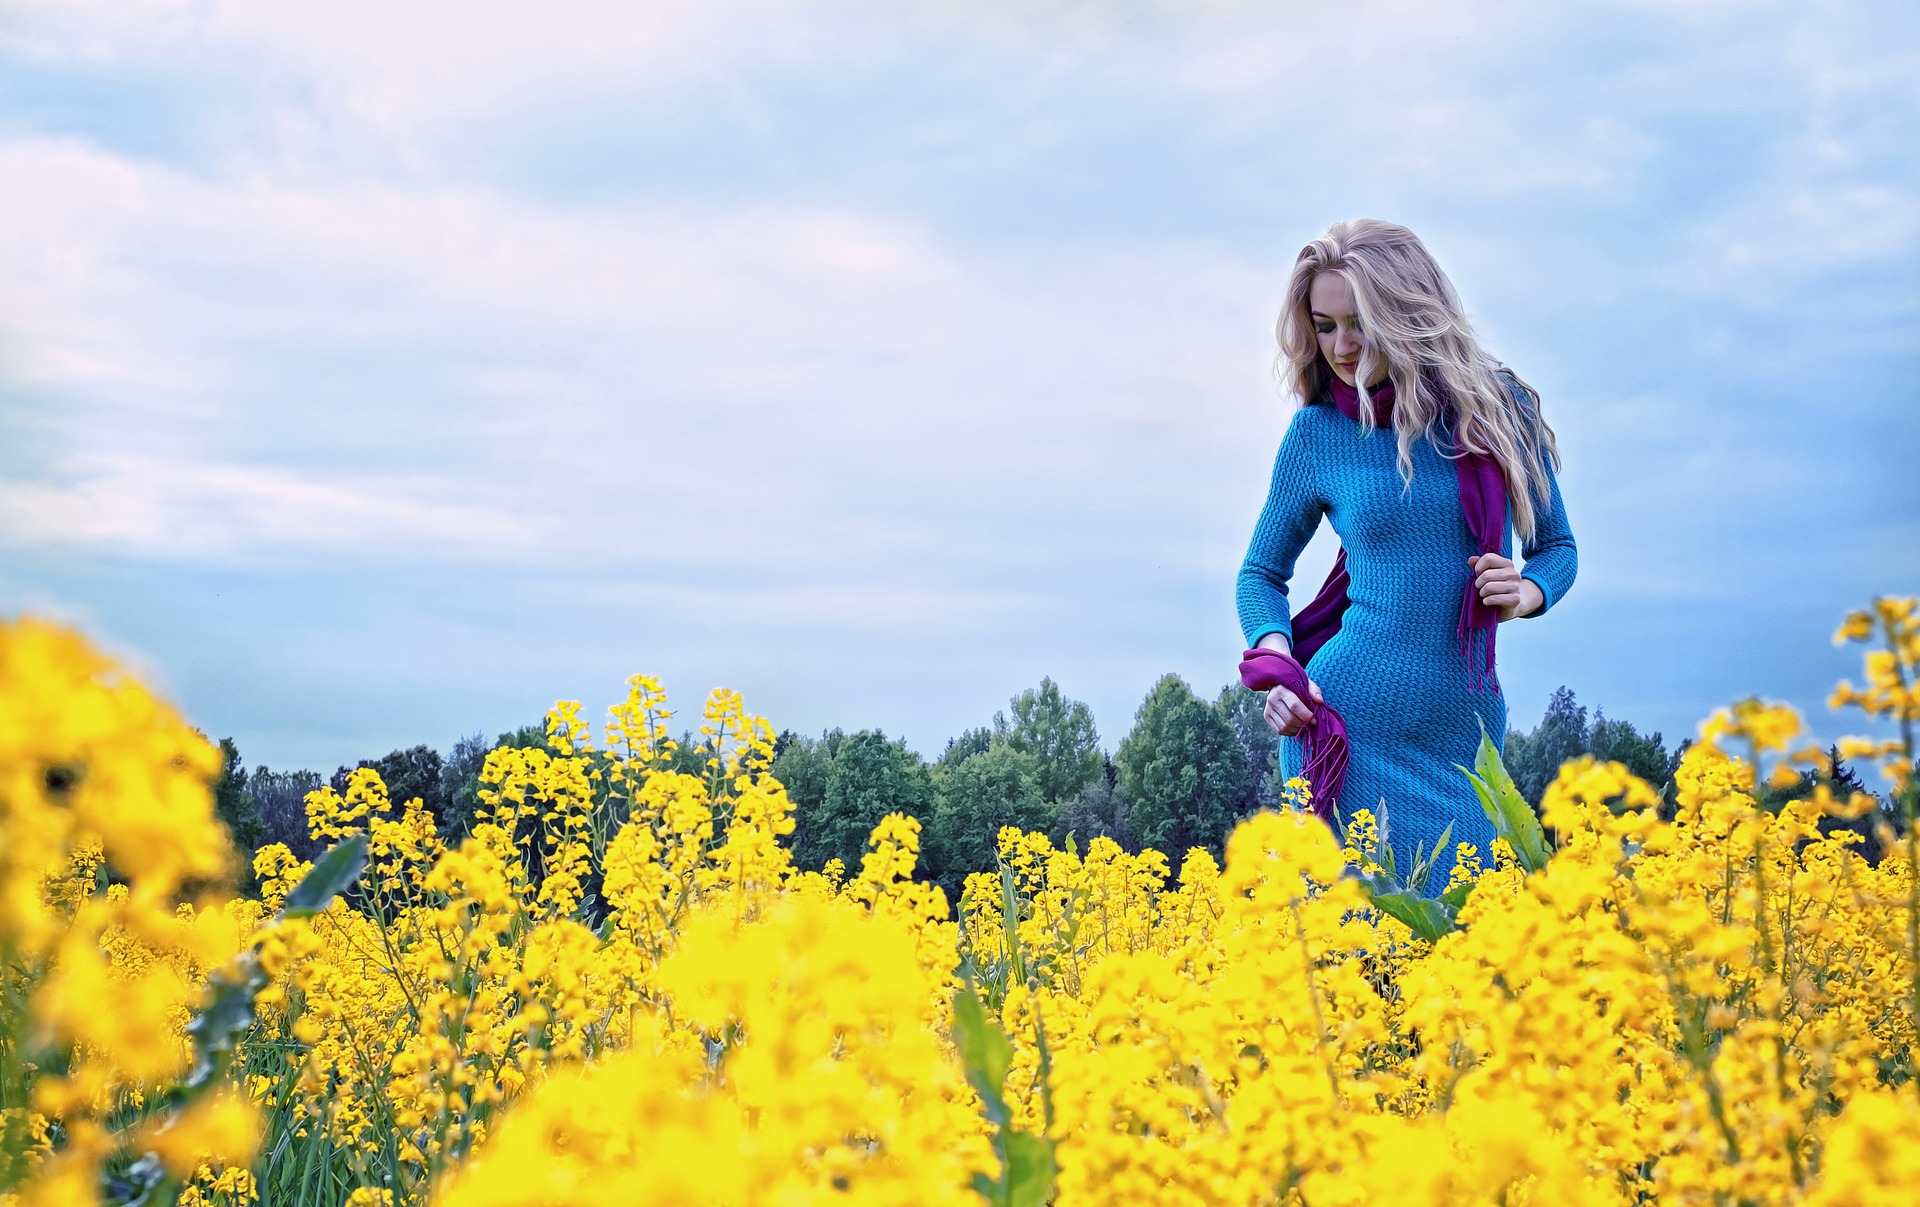 Lady in the dandelion field photo